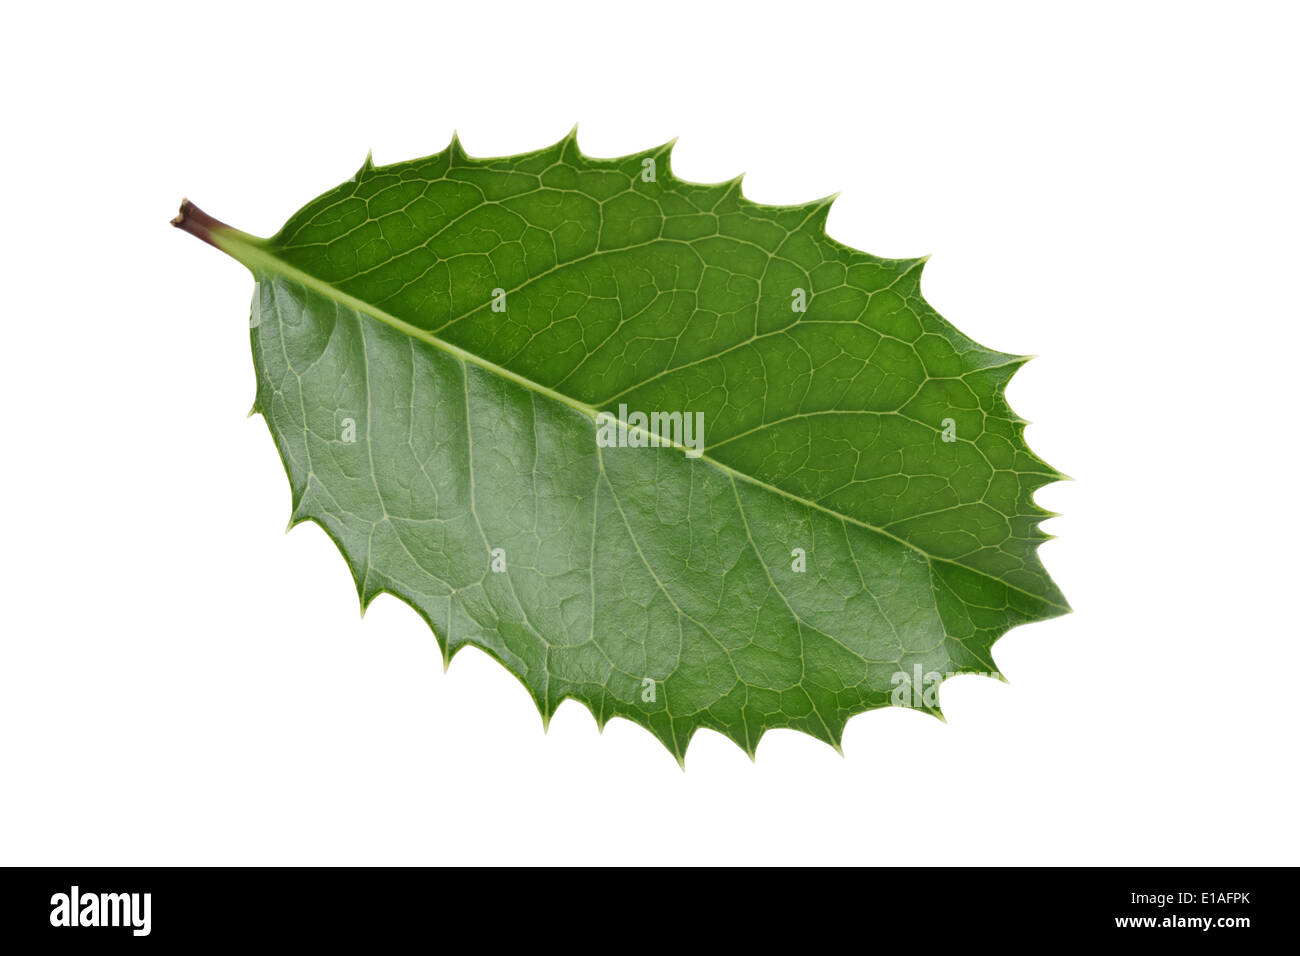 holly leaf on white background, hiiragi Stock Photo